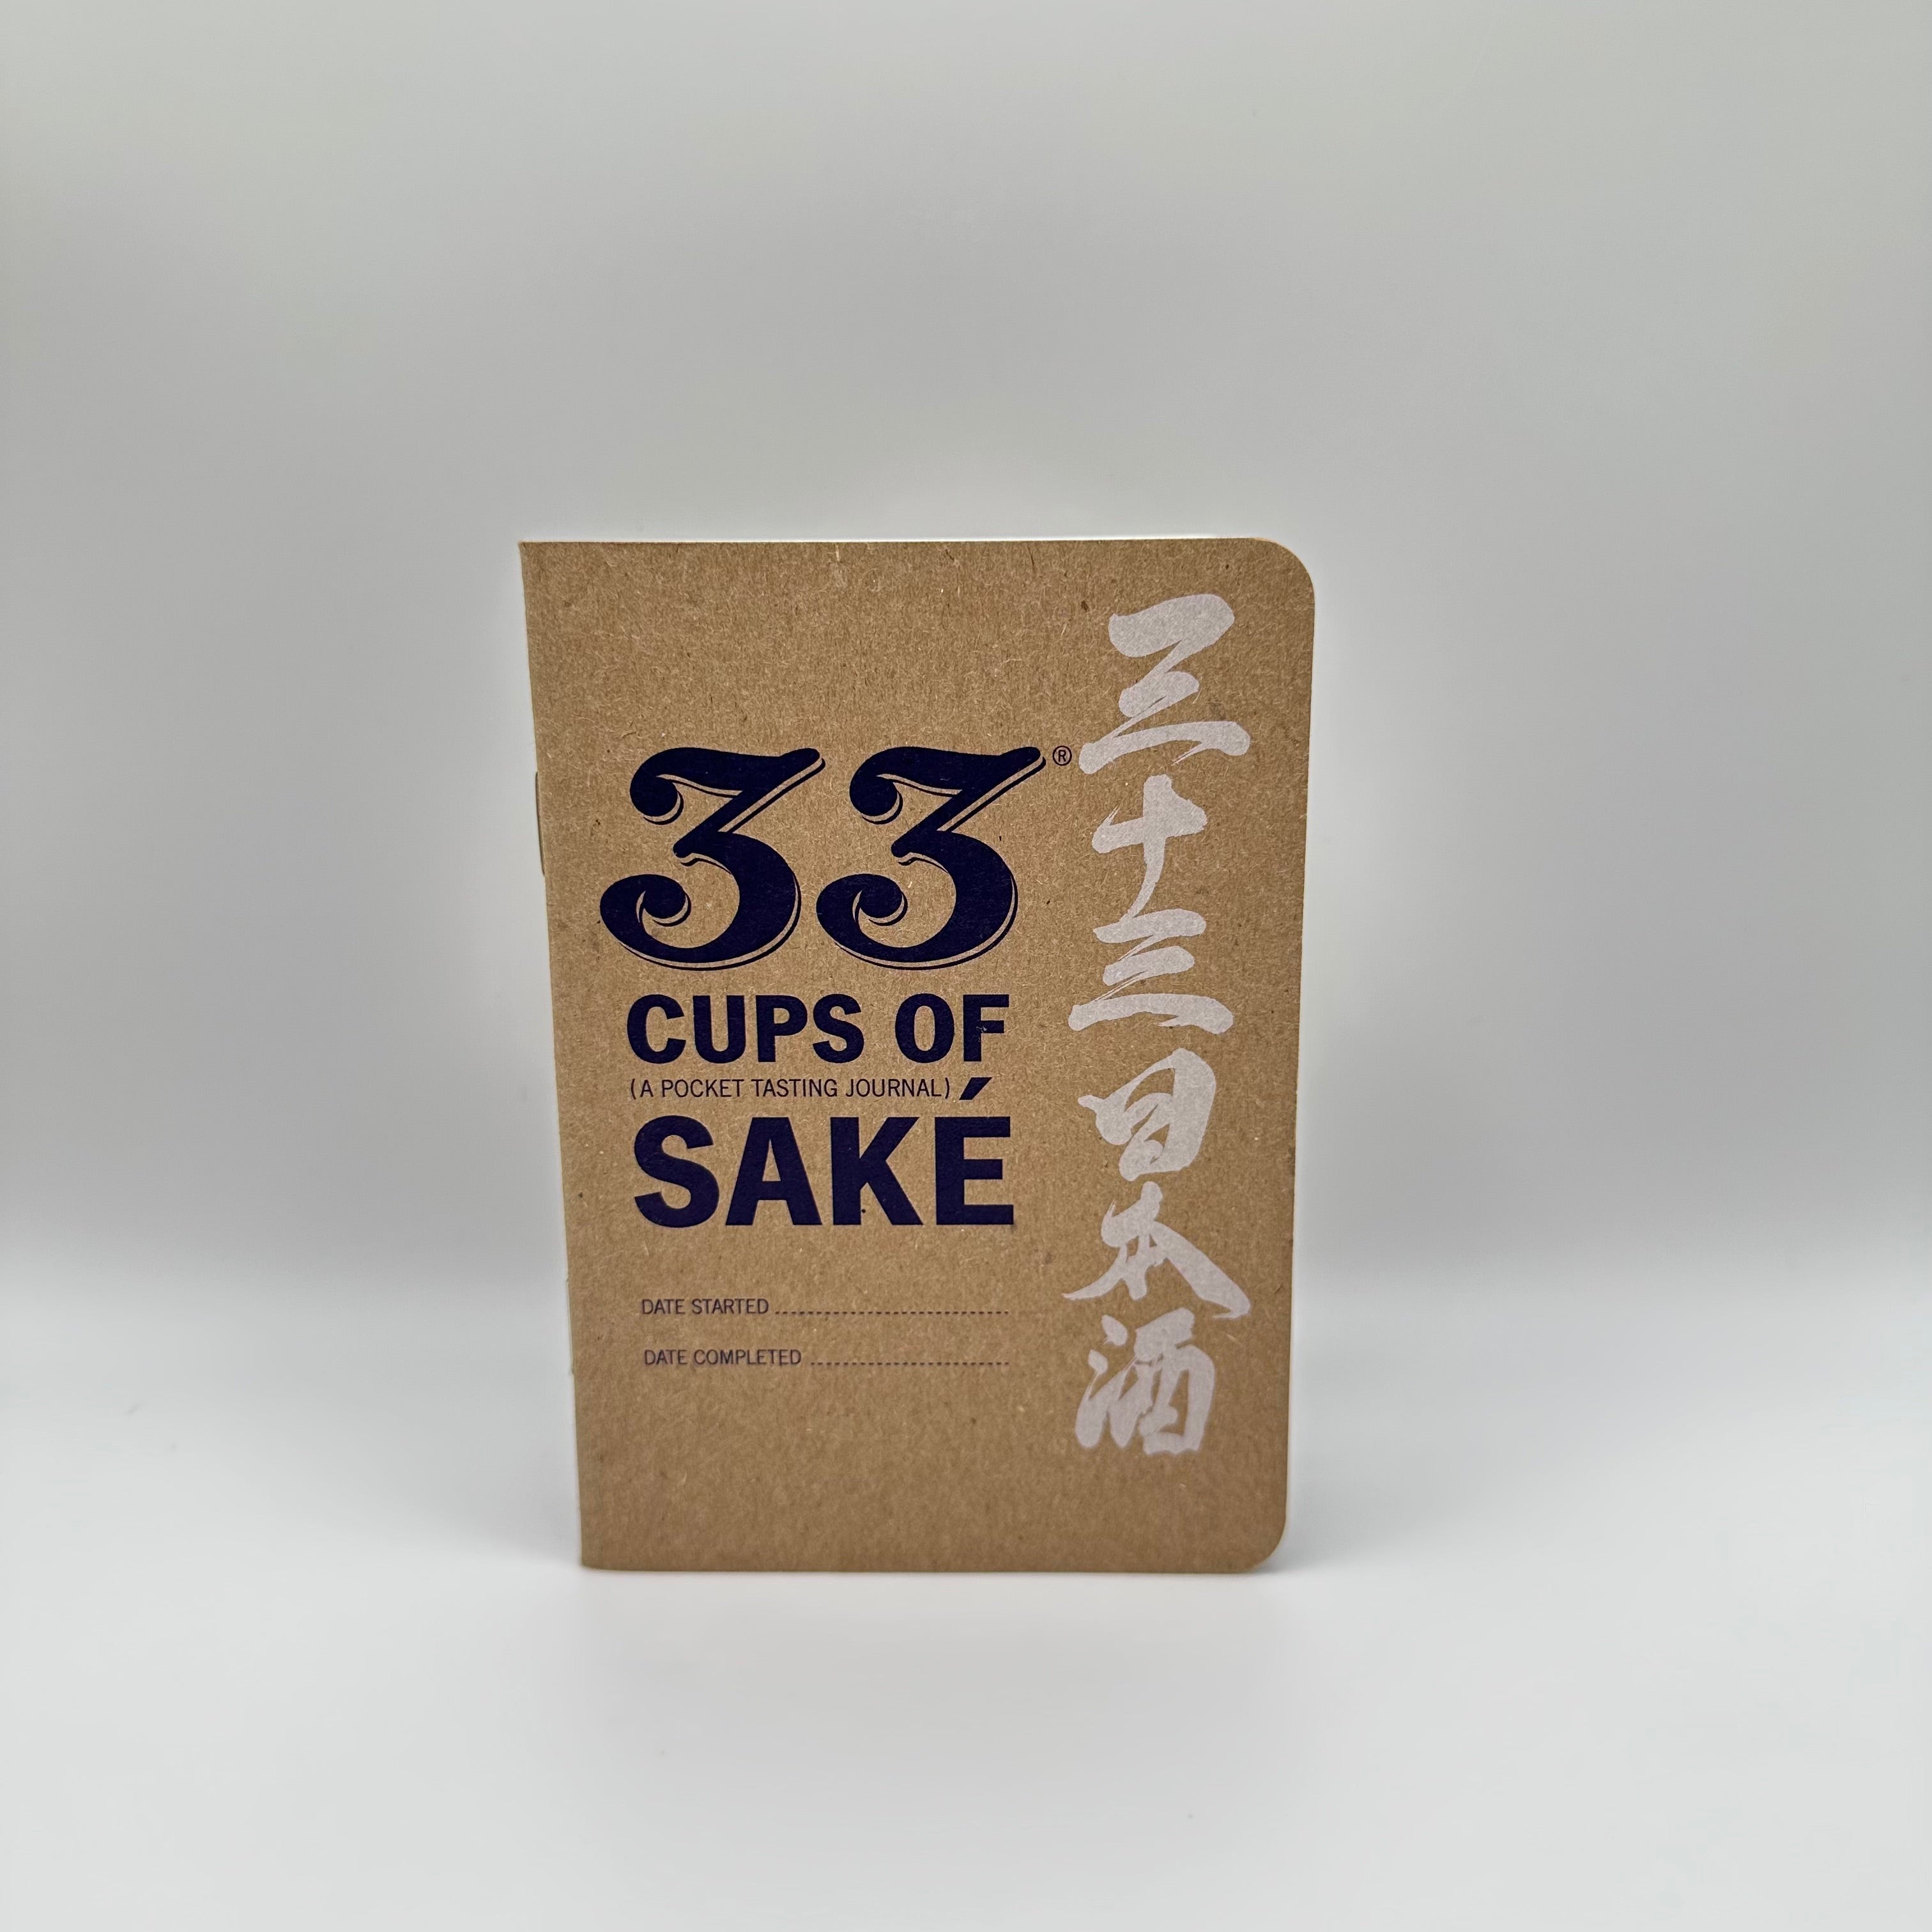 33 Cups of Saké Tasting Journal